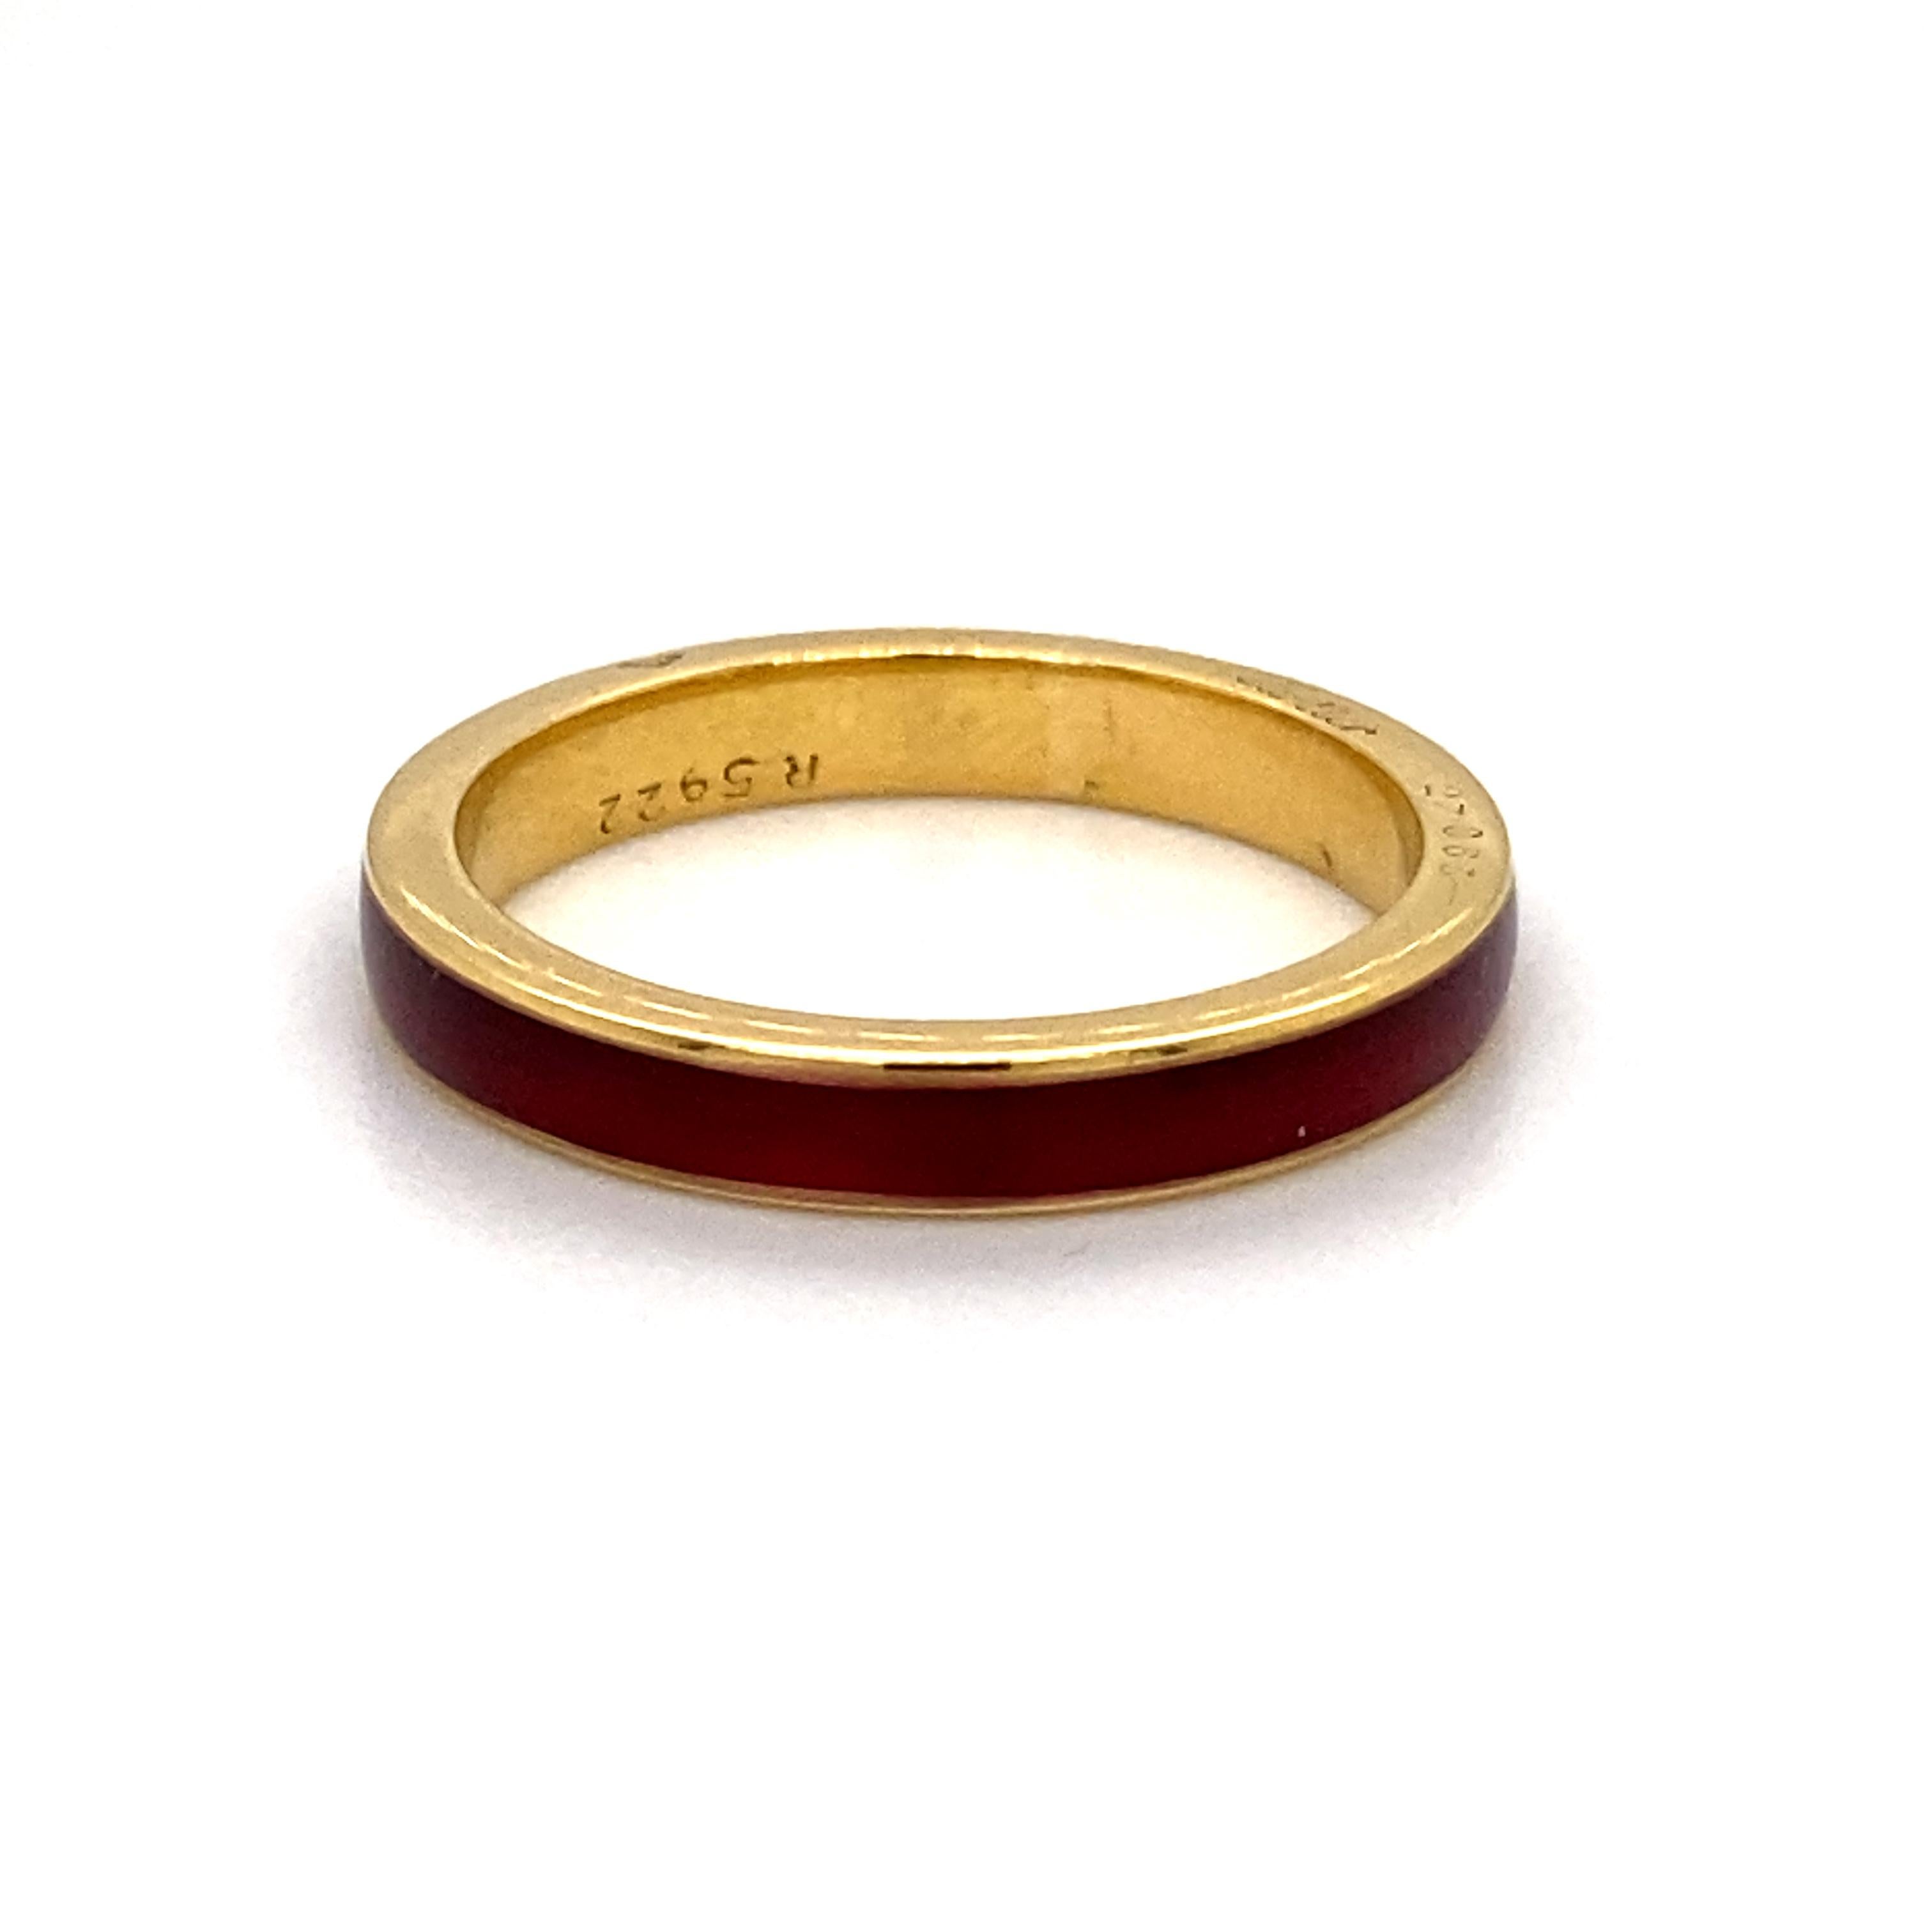 Un bracelet vintage Cartier en or jaune 18 carats et émail rouge, vers 1960.

Conçu comme un simple bracelet en or jaune 18 carats avec un anneau d'émail guilloché rouge profond en son centre.

Une bague magnifiquement élégante, qui peut être portée